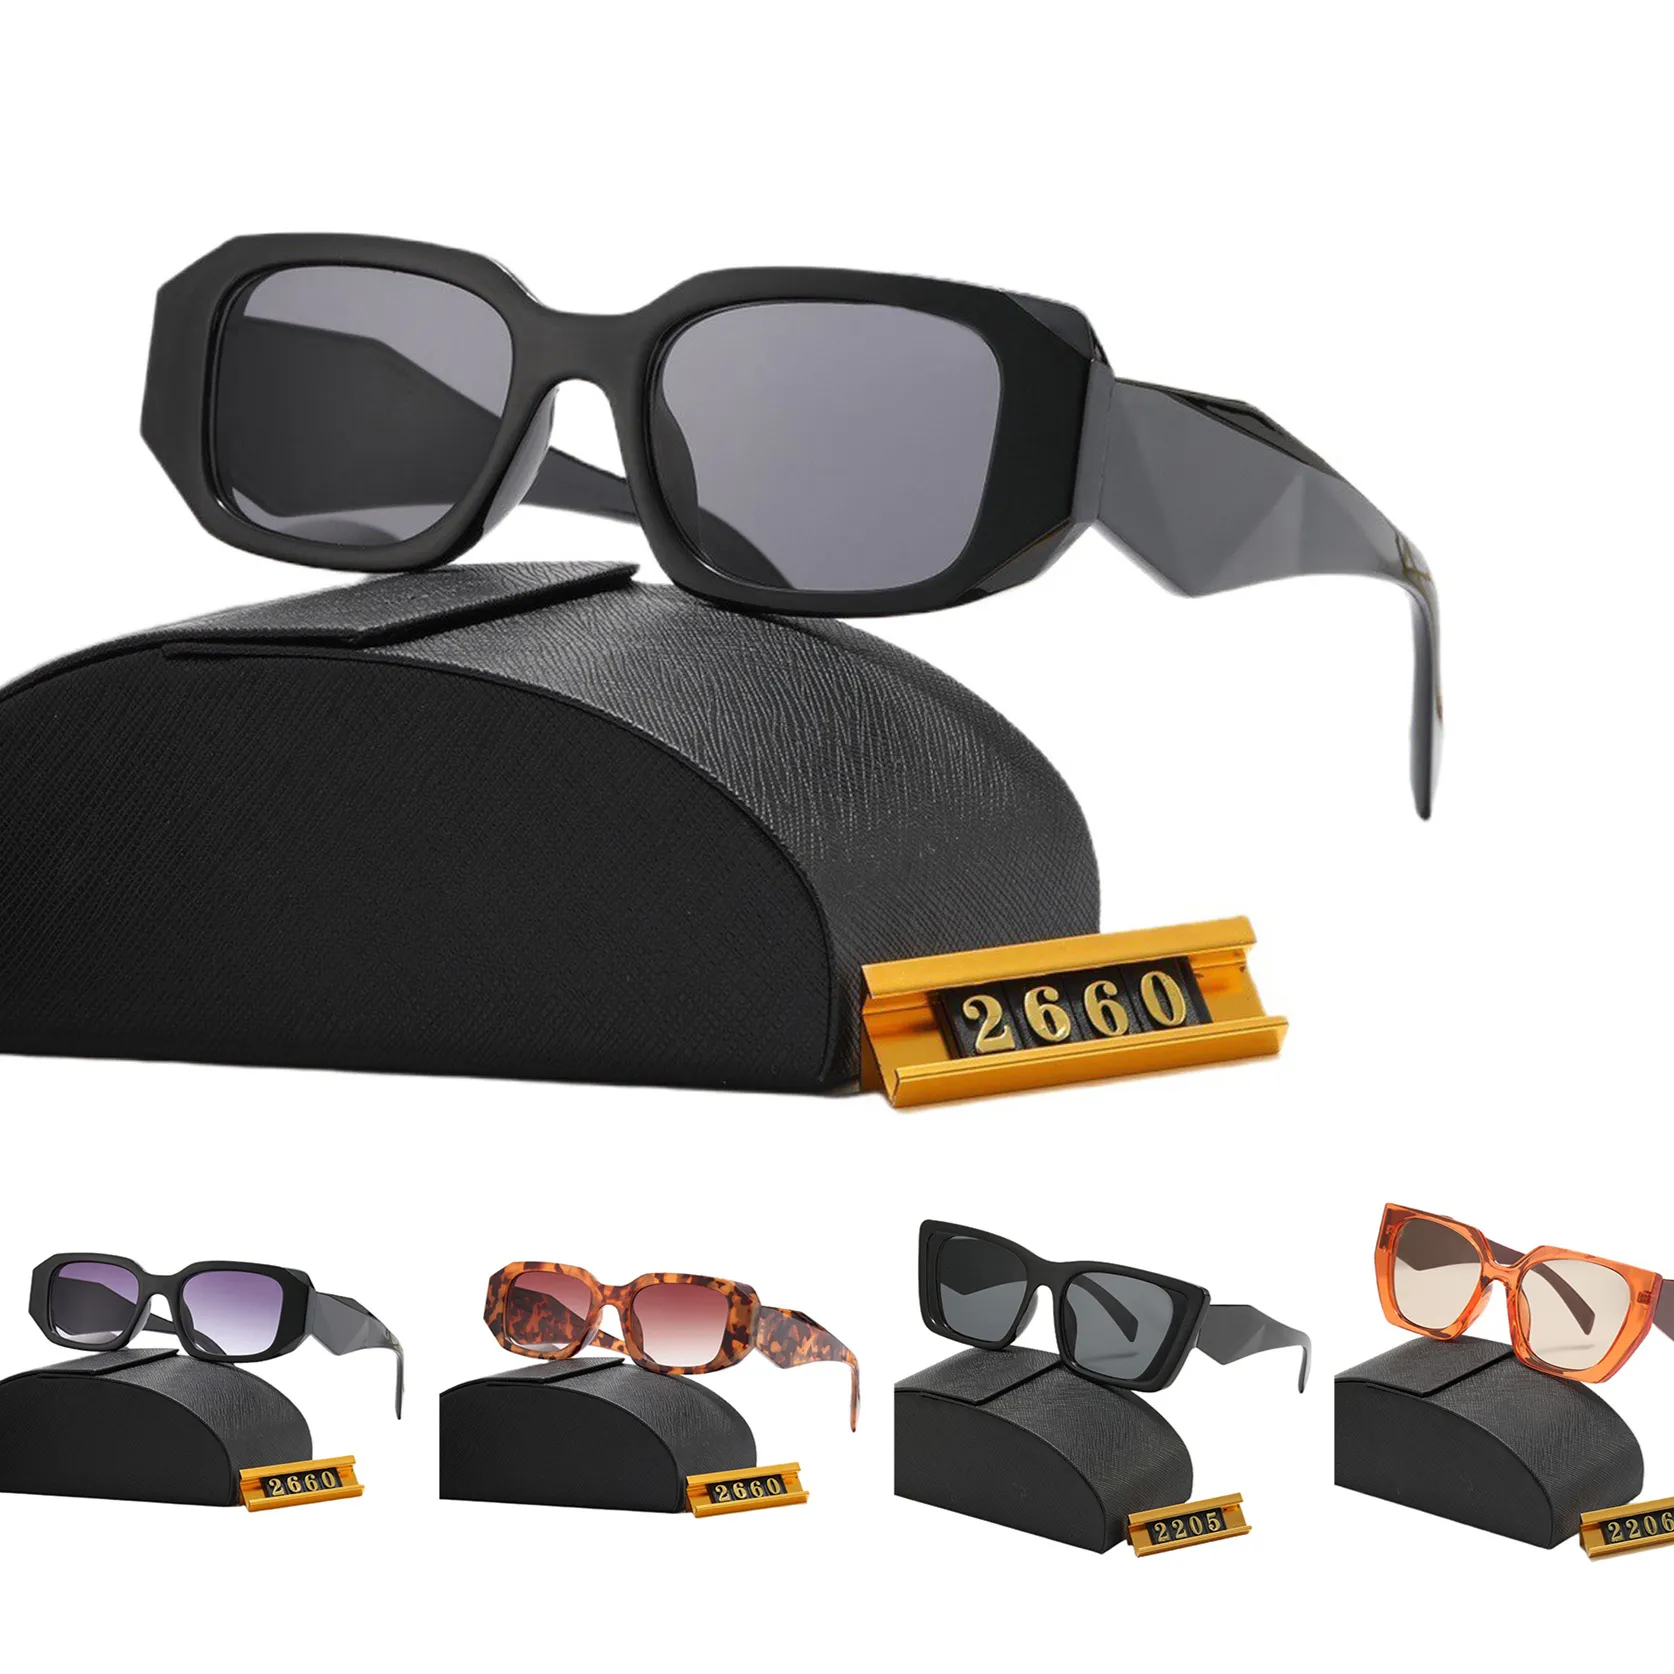 Herrendesigner Sonnenbrille Damen Sonnenbrillen Mode Outdoor klassische Stil Eyewear Retro Unisex Brille Sport treibt mehrere Stiltöne mit Box